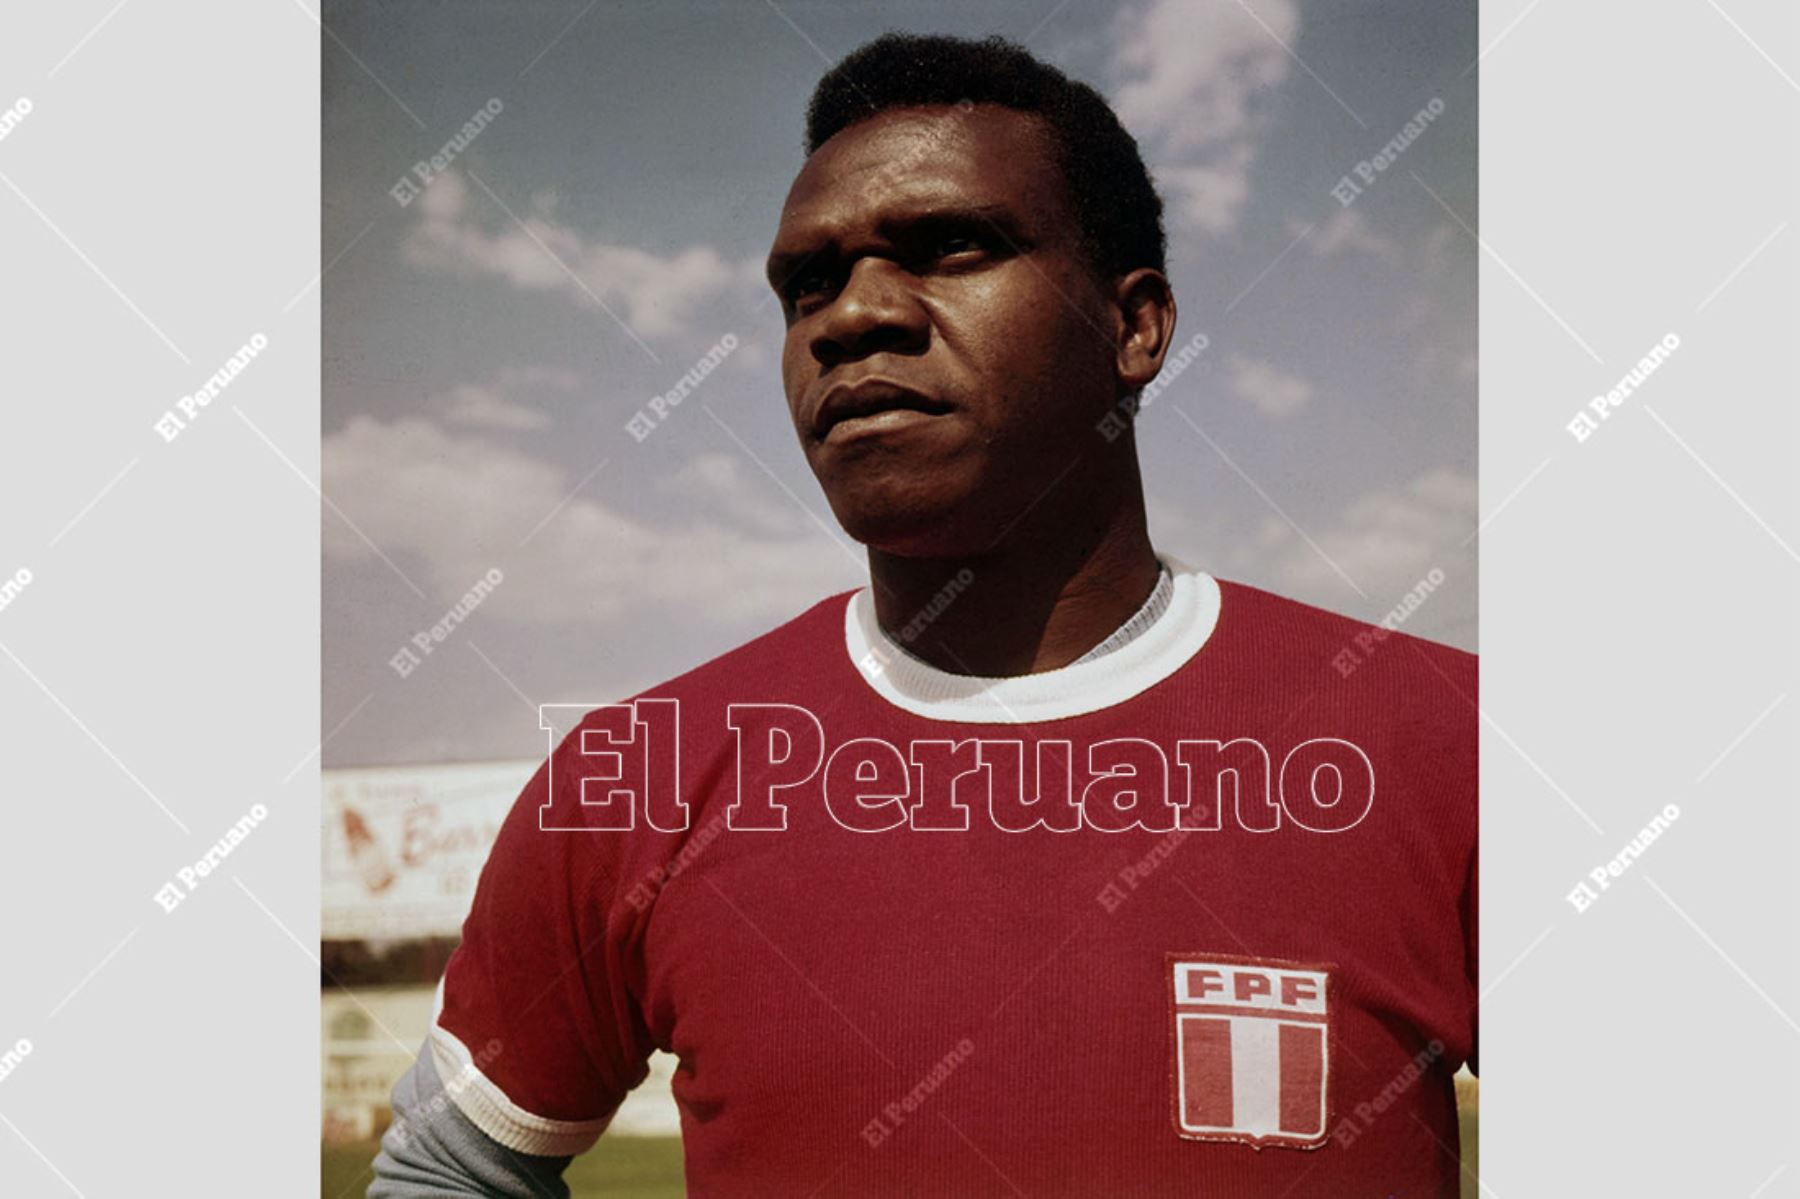 México - junio 1970 / Pedro Pablo "Perico" León delantero de la selección peruana de fútbol en el mundial de México 70. 
Foto: Archivo Histórico de El Peruano